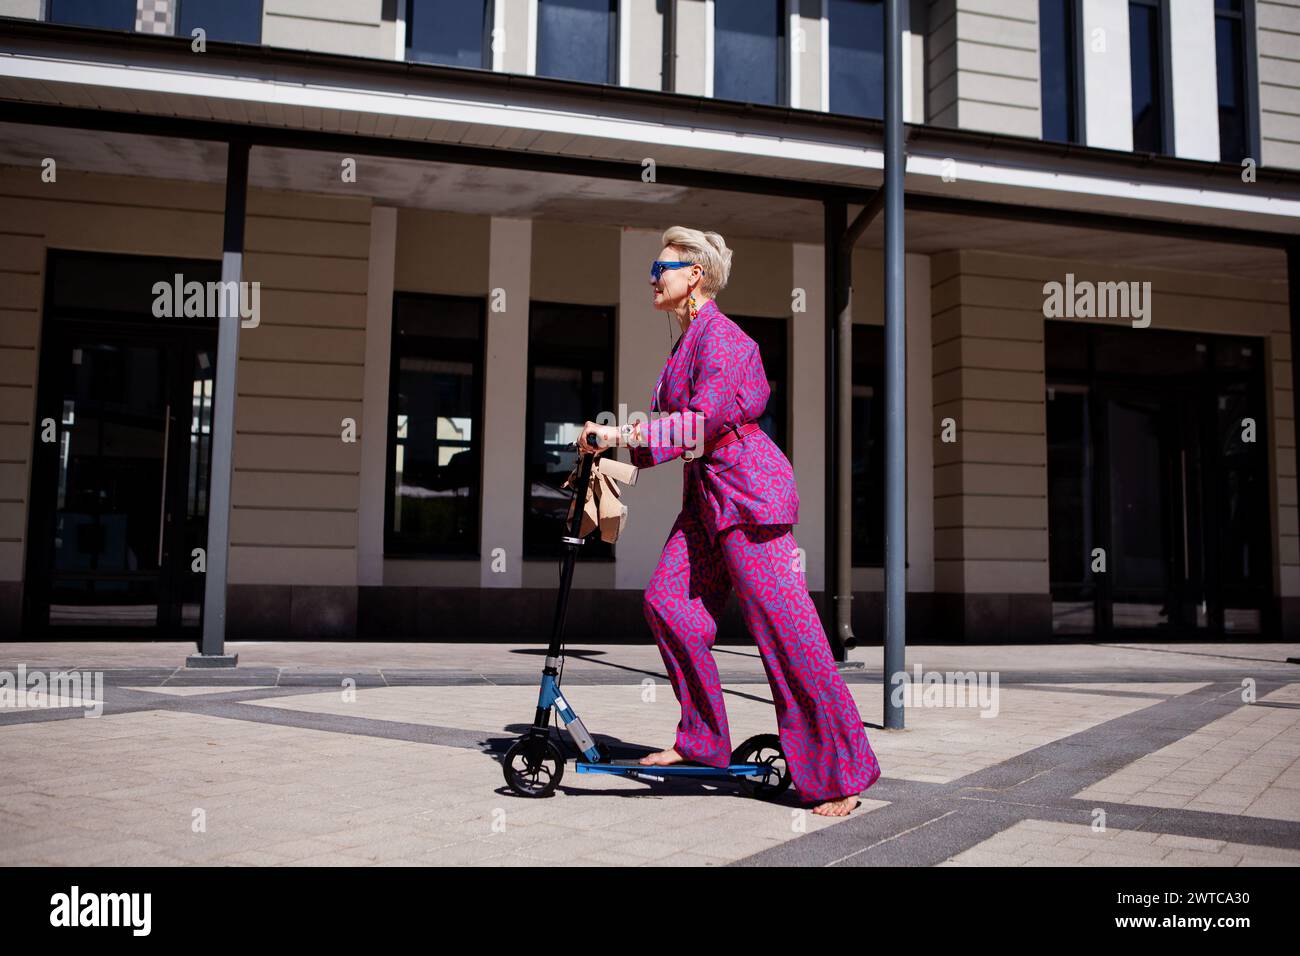 Élégamment habillée femme mature dans un pantalon rose vif et une veste roule autour de la ville sur un scooter, un frien actif, sain et éco Banque D'Images